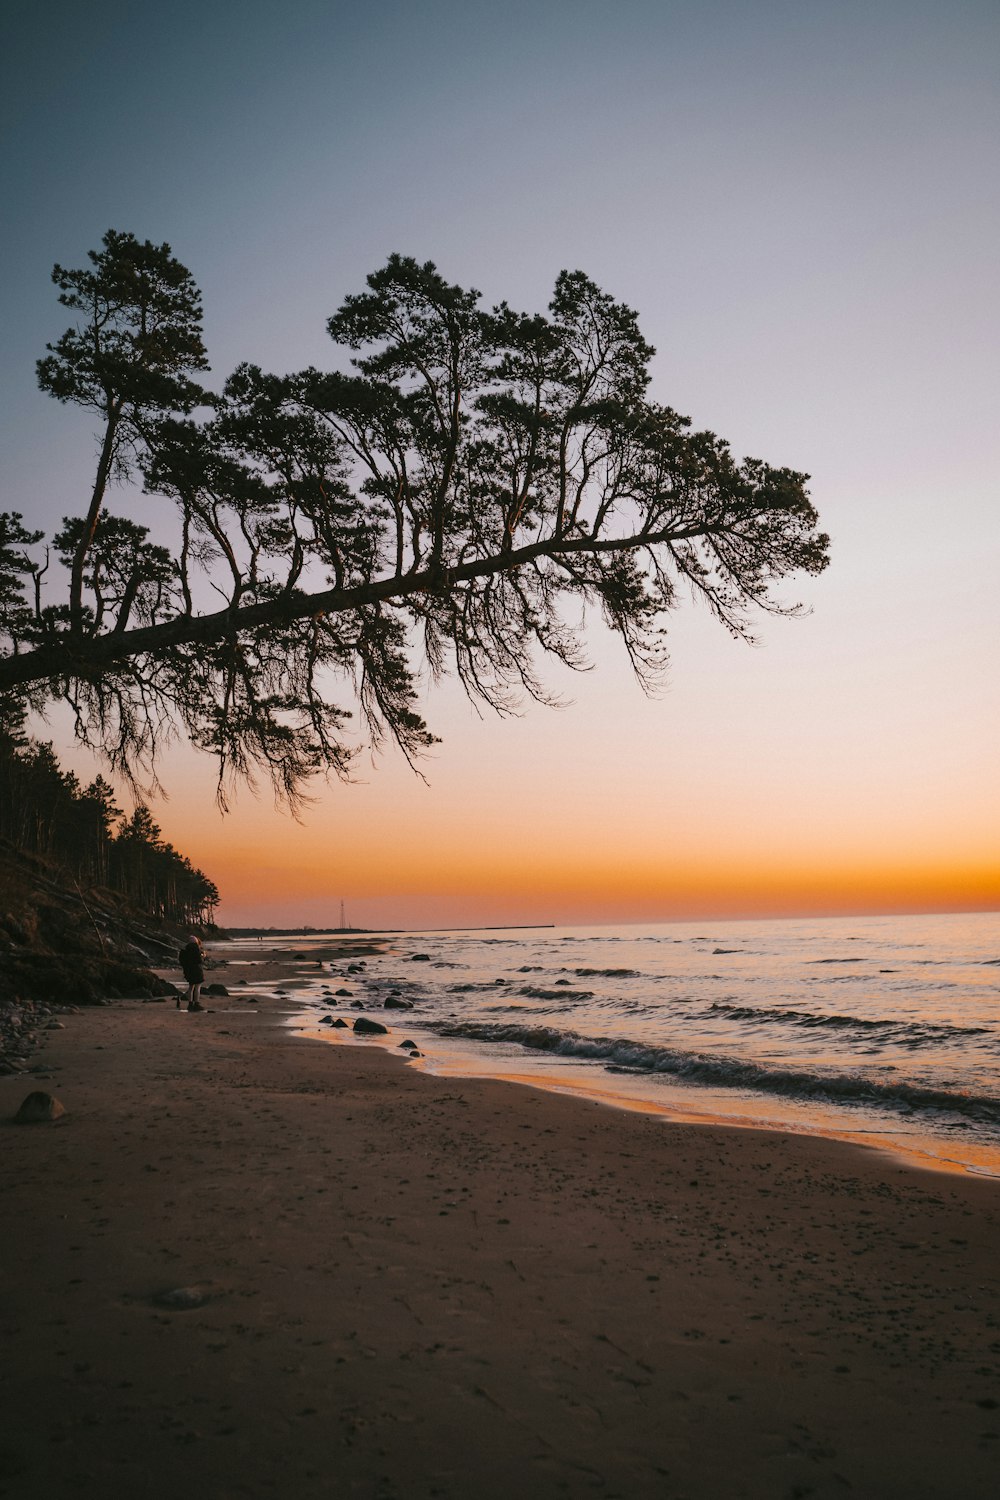 albero senza foglie sulla spiaggia durante il tramonto